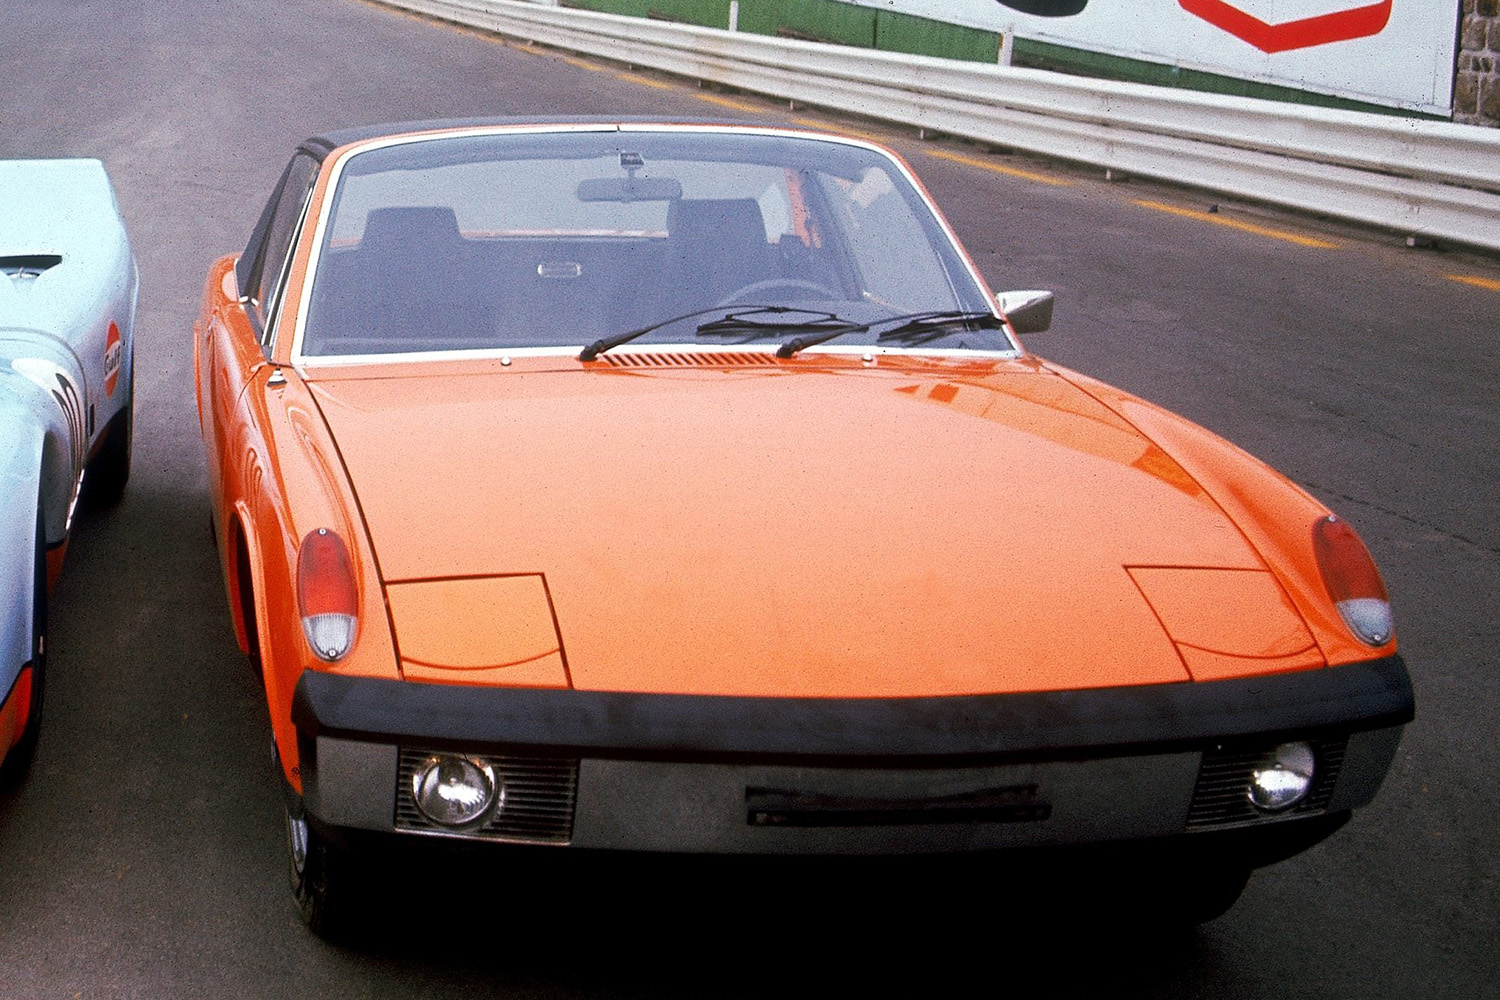 ポルシェオールスターが開発に携わったスポーツカー「914」